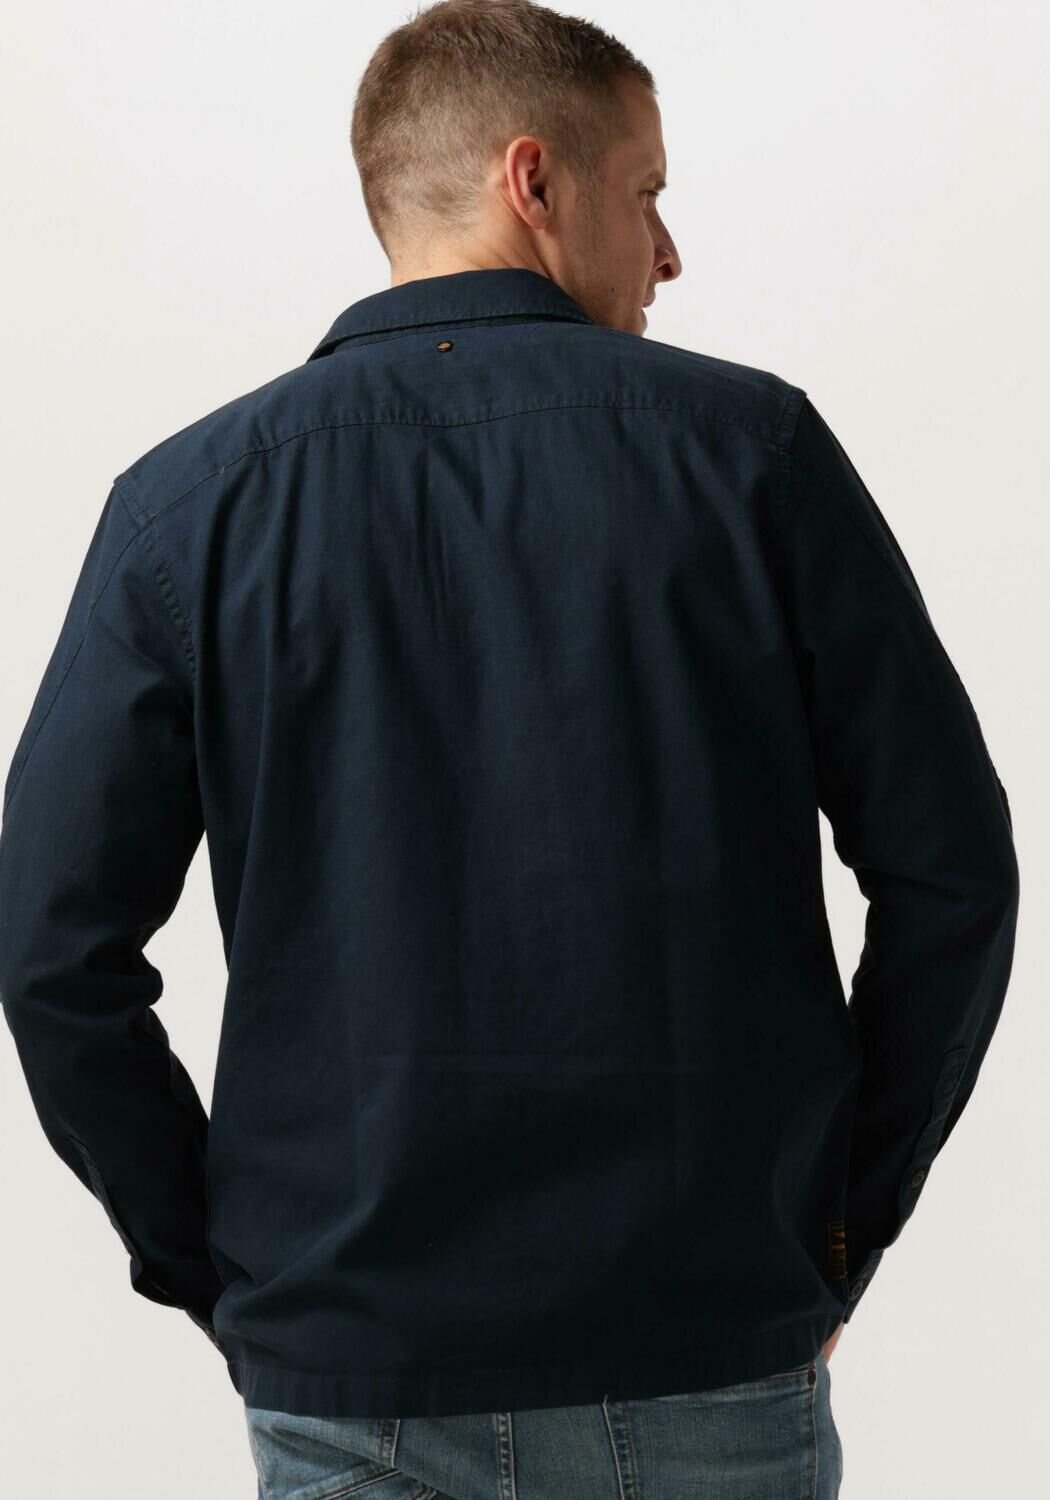 PME LEGEND Heren Overhemden Long Sleeve Shirt Ctn Matt Weave Blauw